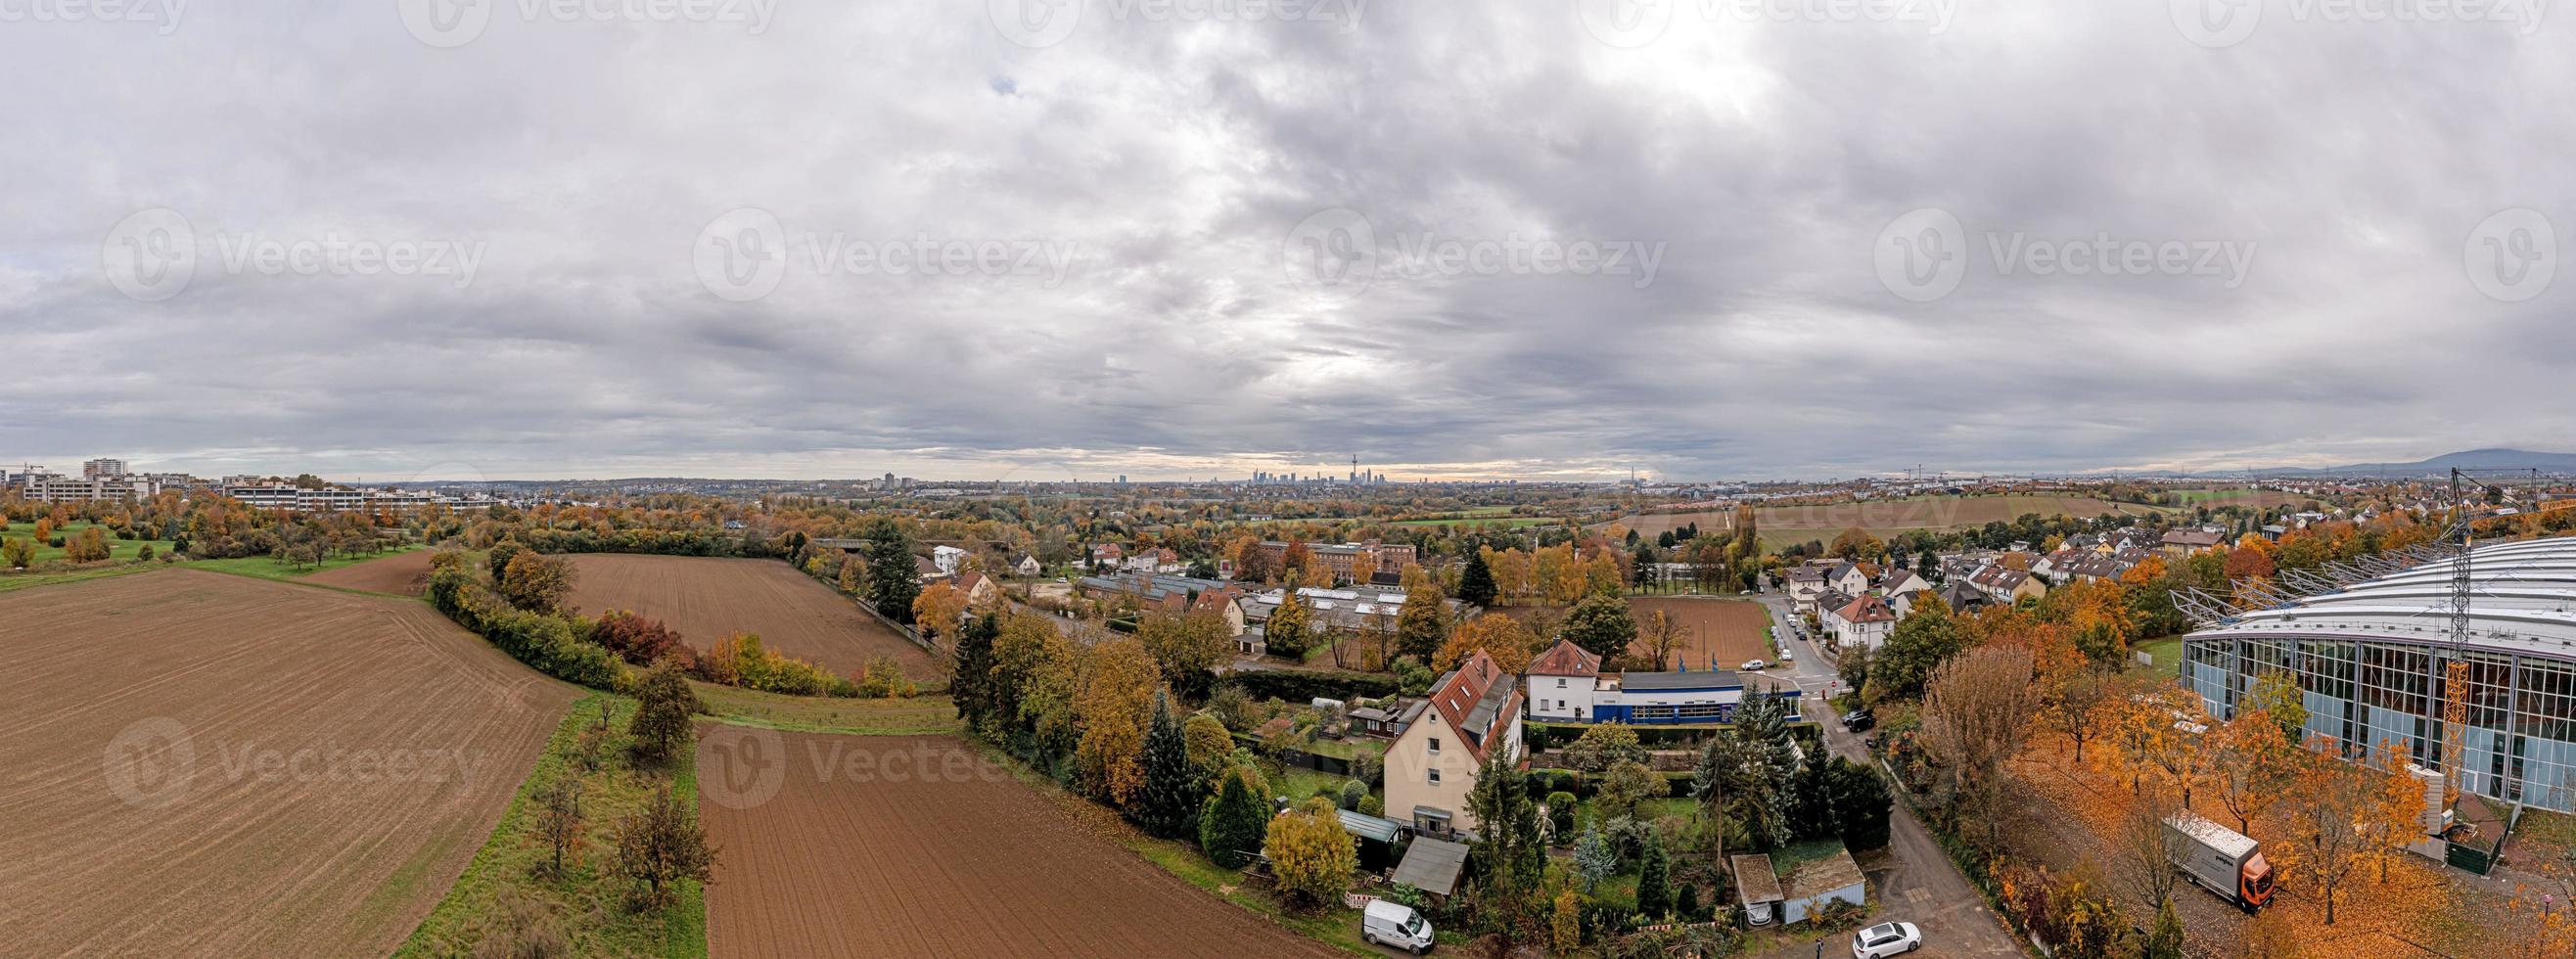 imagen panorámica del horizonte de frankfurt desde una distancia mayor contra el cielo nublado en otoño foto